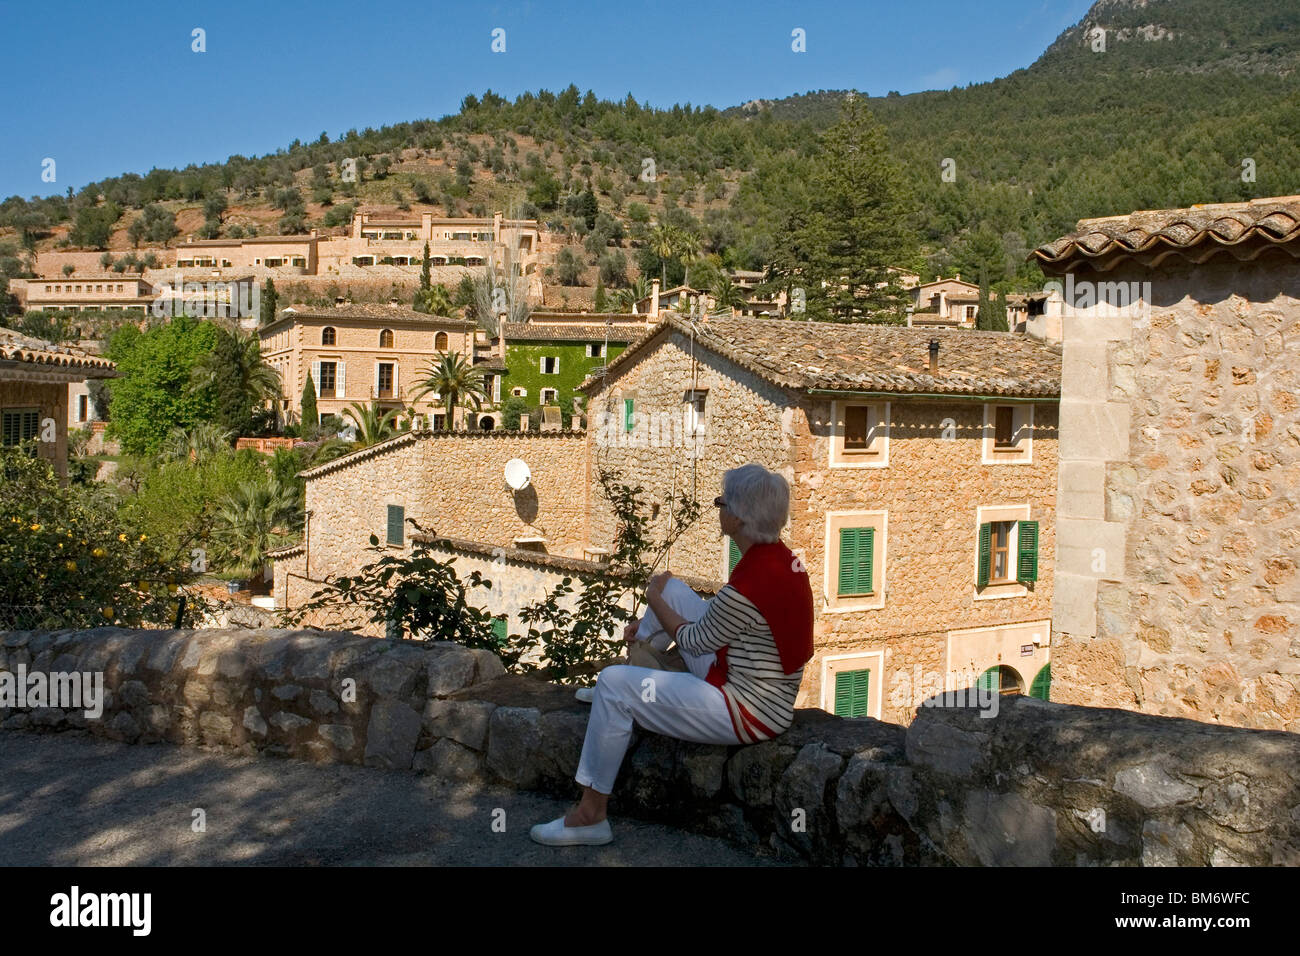 A Lady tourist gazing at some lovely houses in Deia (Majorca - Spain). Une touriste contemplant certaines maisons de Deia. Stock Photo